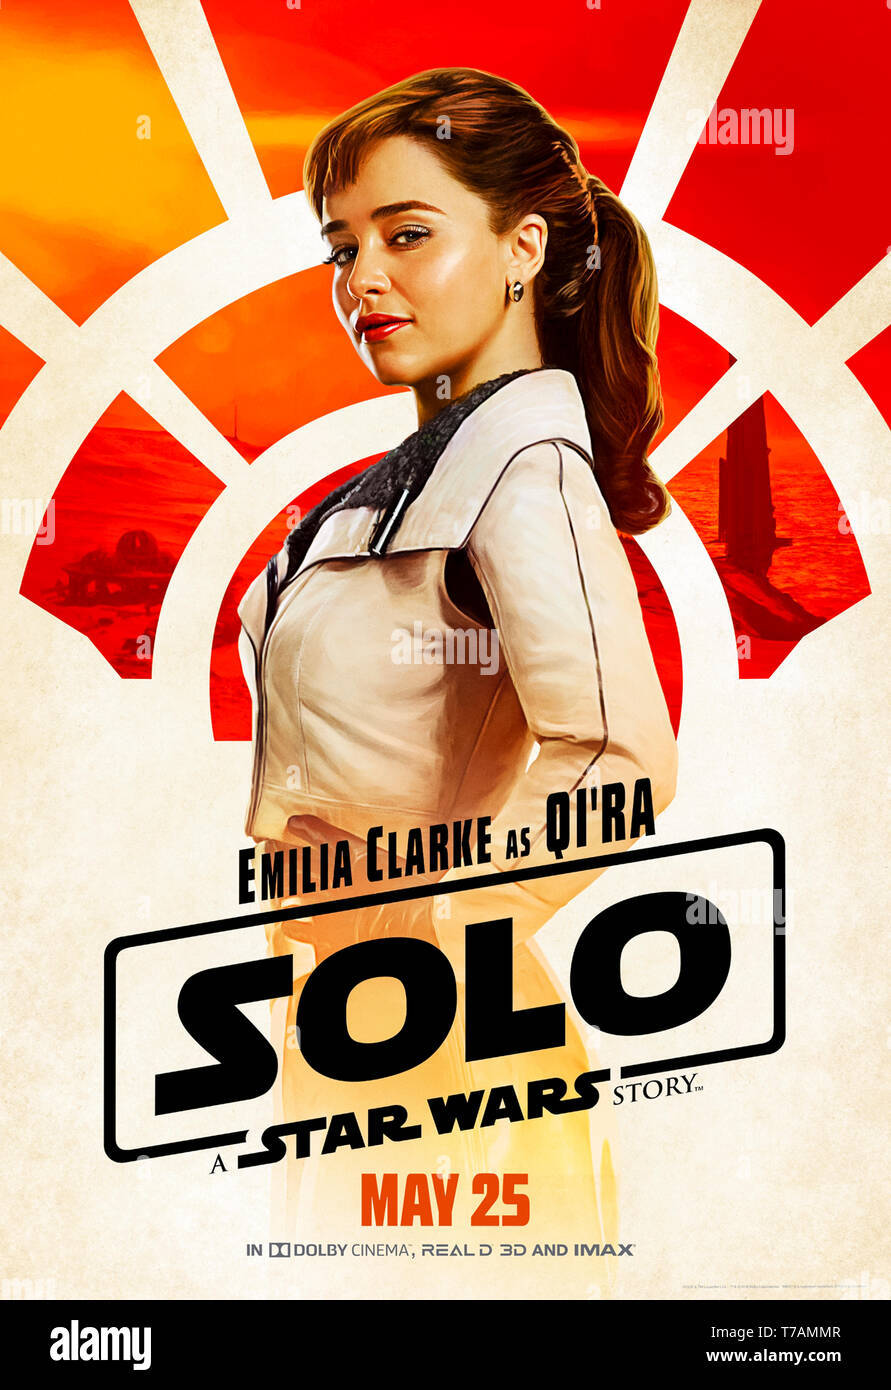 Solo: ein Star Wars Geschichte (2018) unter der Regie von Ron Howard und mit Emilia Clarke als Qi'ra, Kindheit Han Solo's bester Freund und erste Liebe. Stockfoto